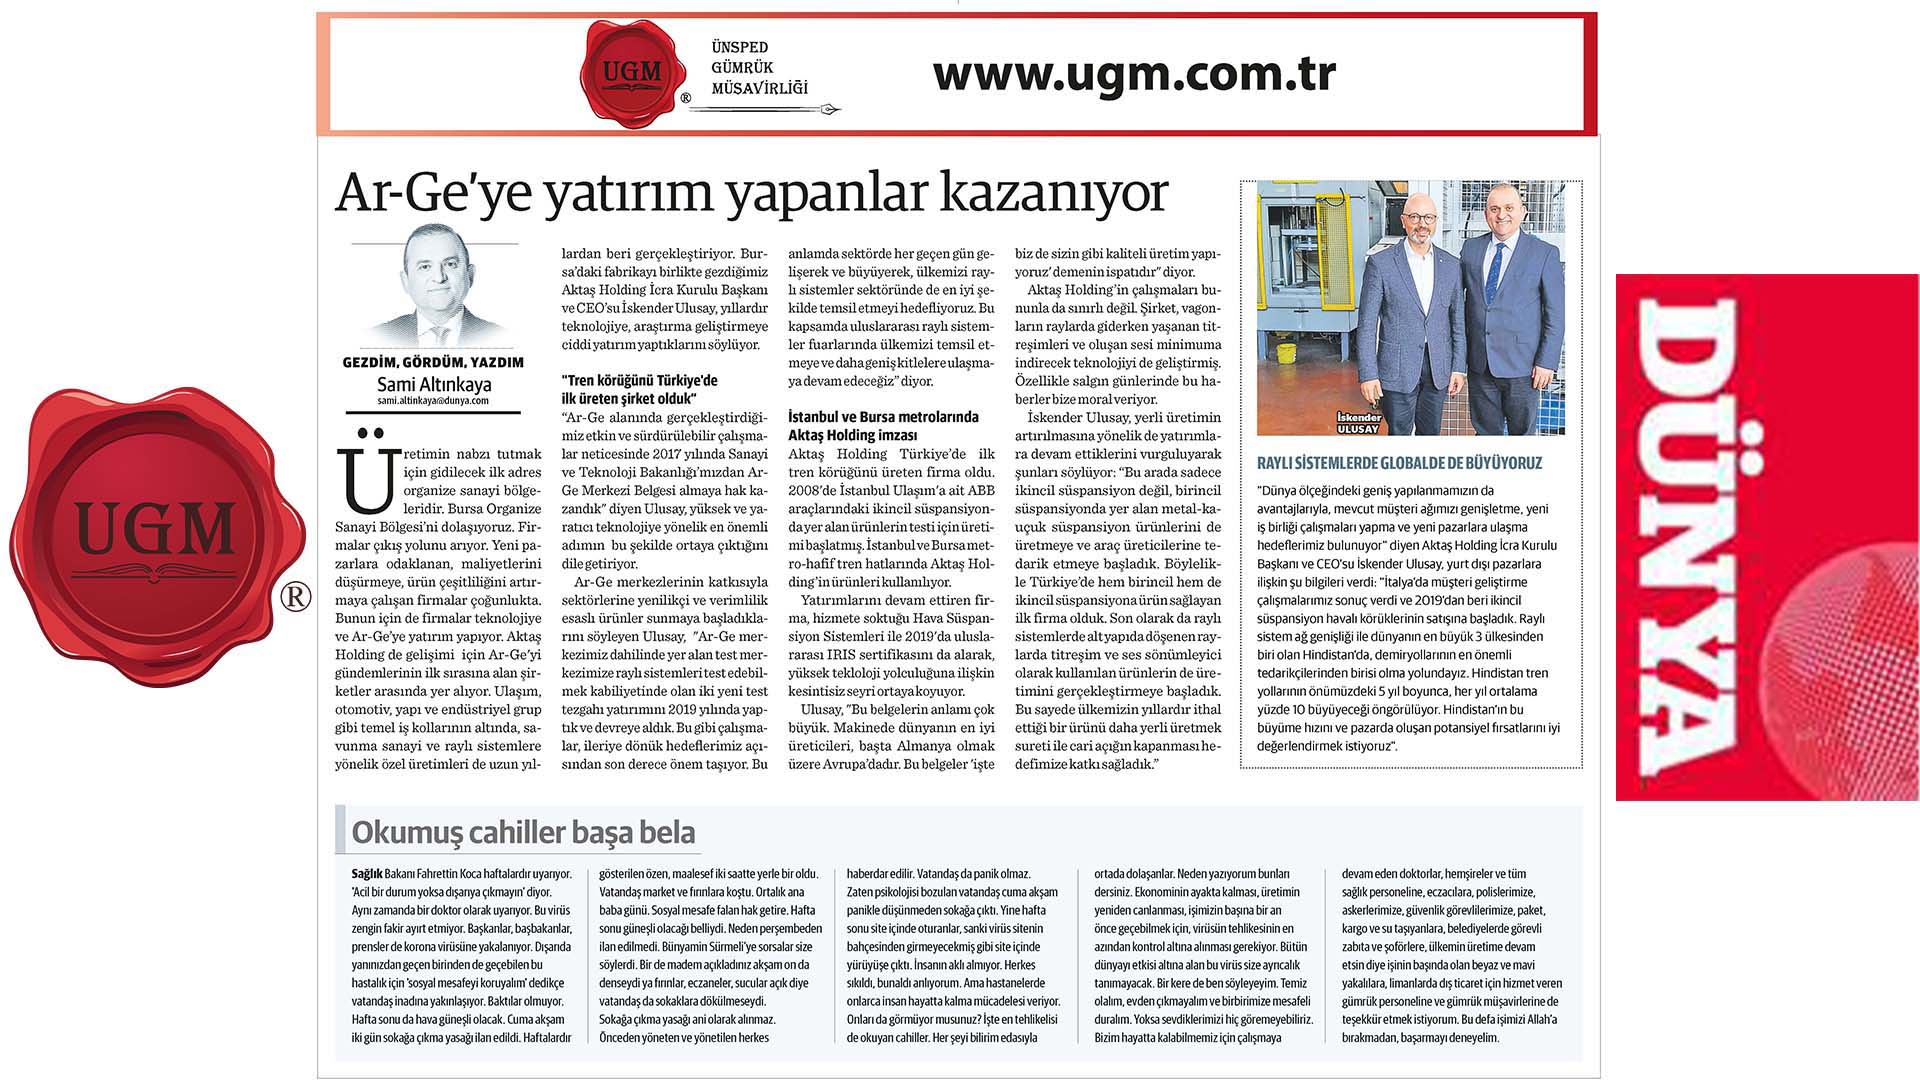 UGM Kurumsal İletişim Direktörümüz Sami Altınkaya'nın "Ar-Ge’ye yatırım yapanlar kazanıyor" Başlıklı Yazısı, 13.04.2020 Tarihinde Dünya Gazetesi'nde Yayınlandı.